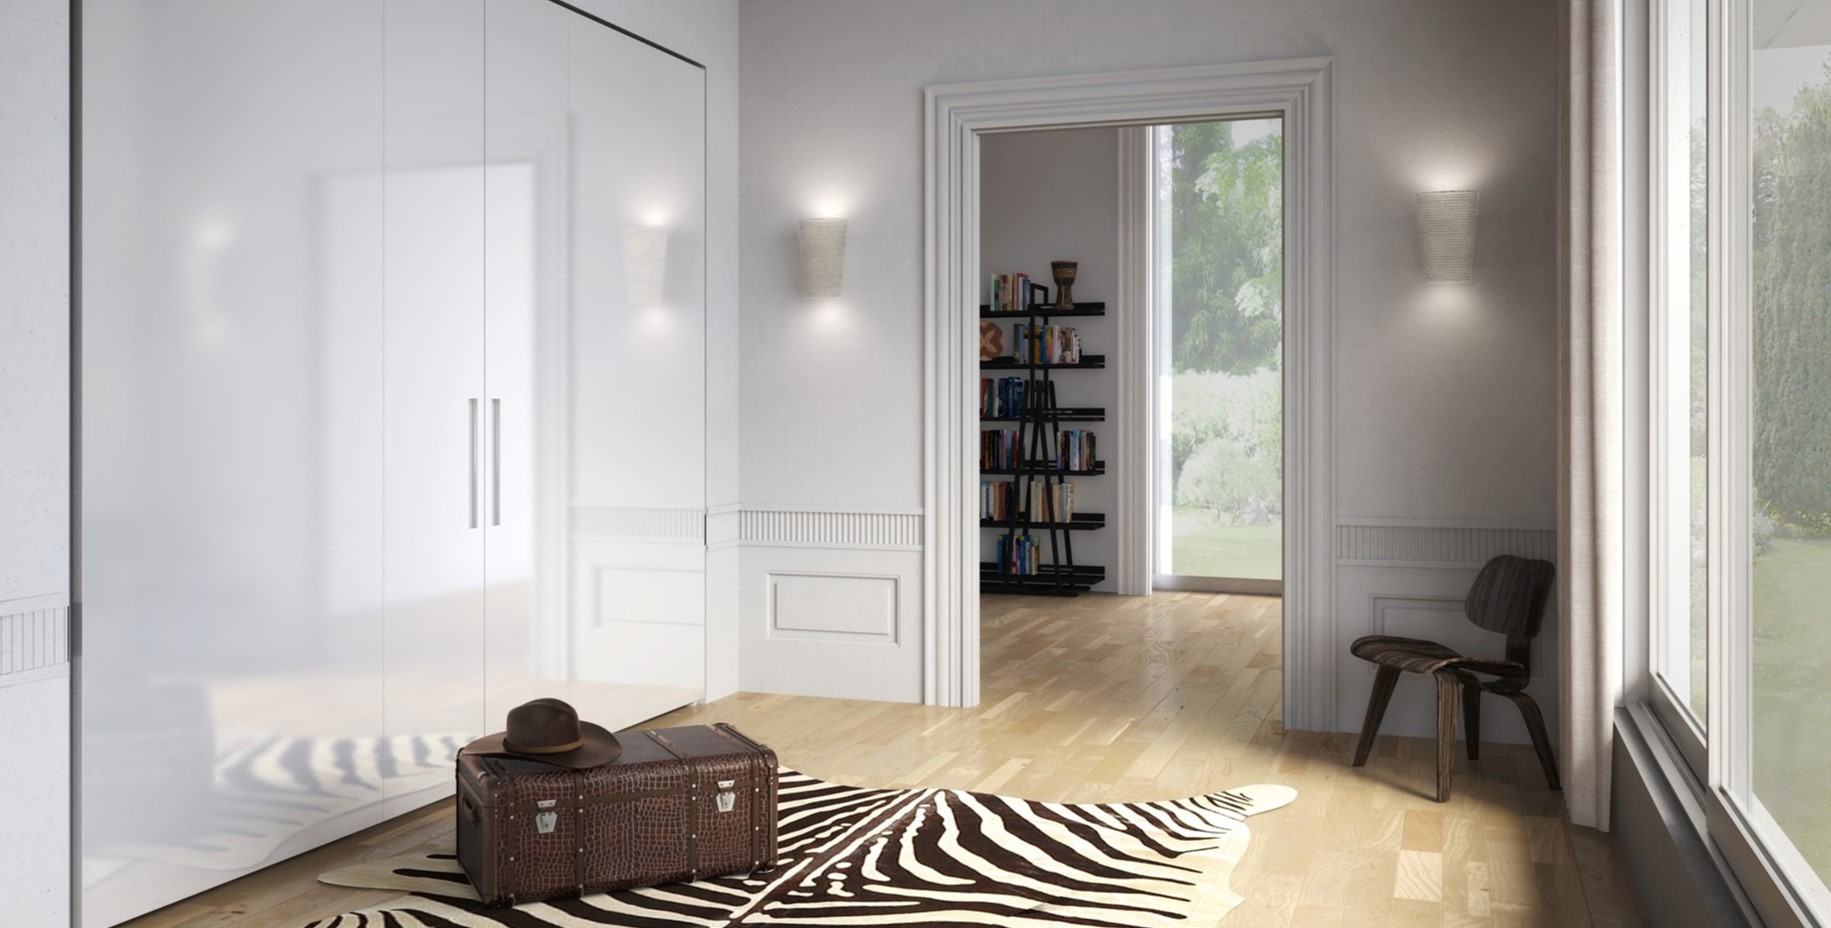 Встроенный белый шкаф гармонично сочетается с интерьером